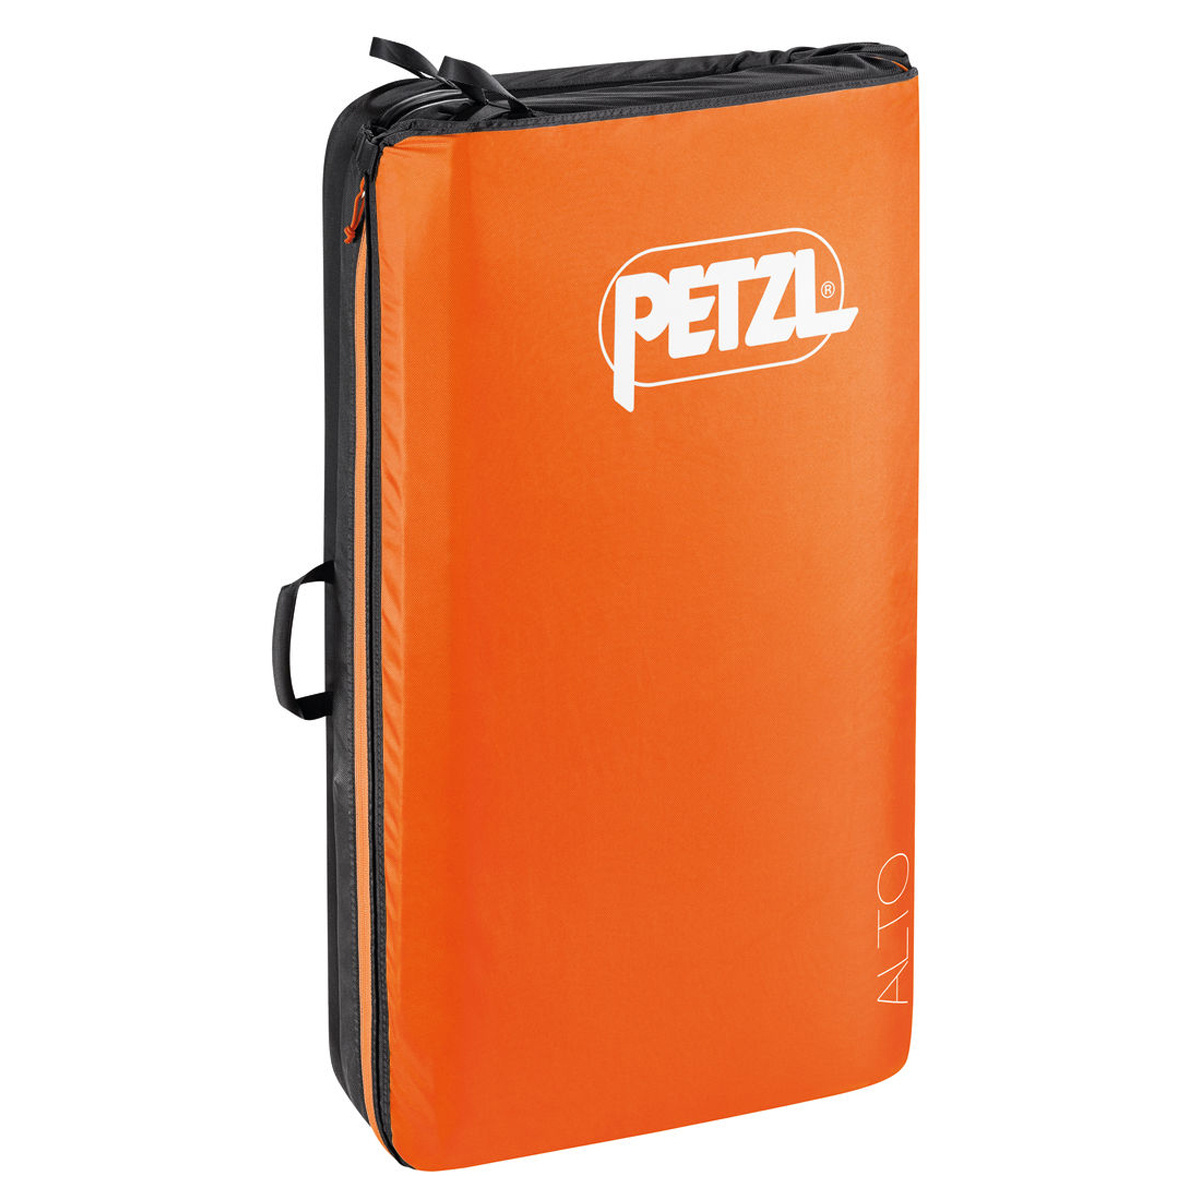 Image of Petzl Crash pad Alto